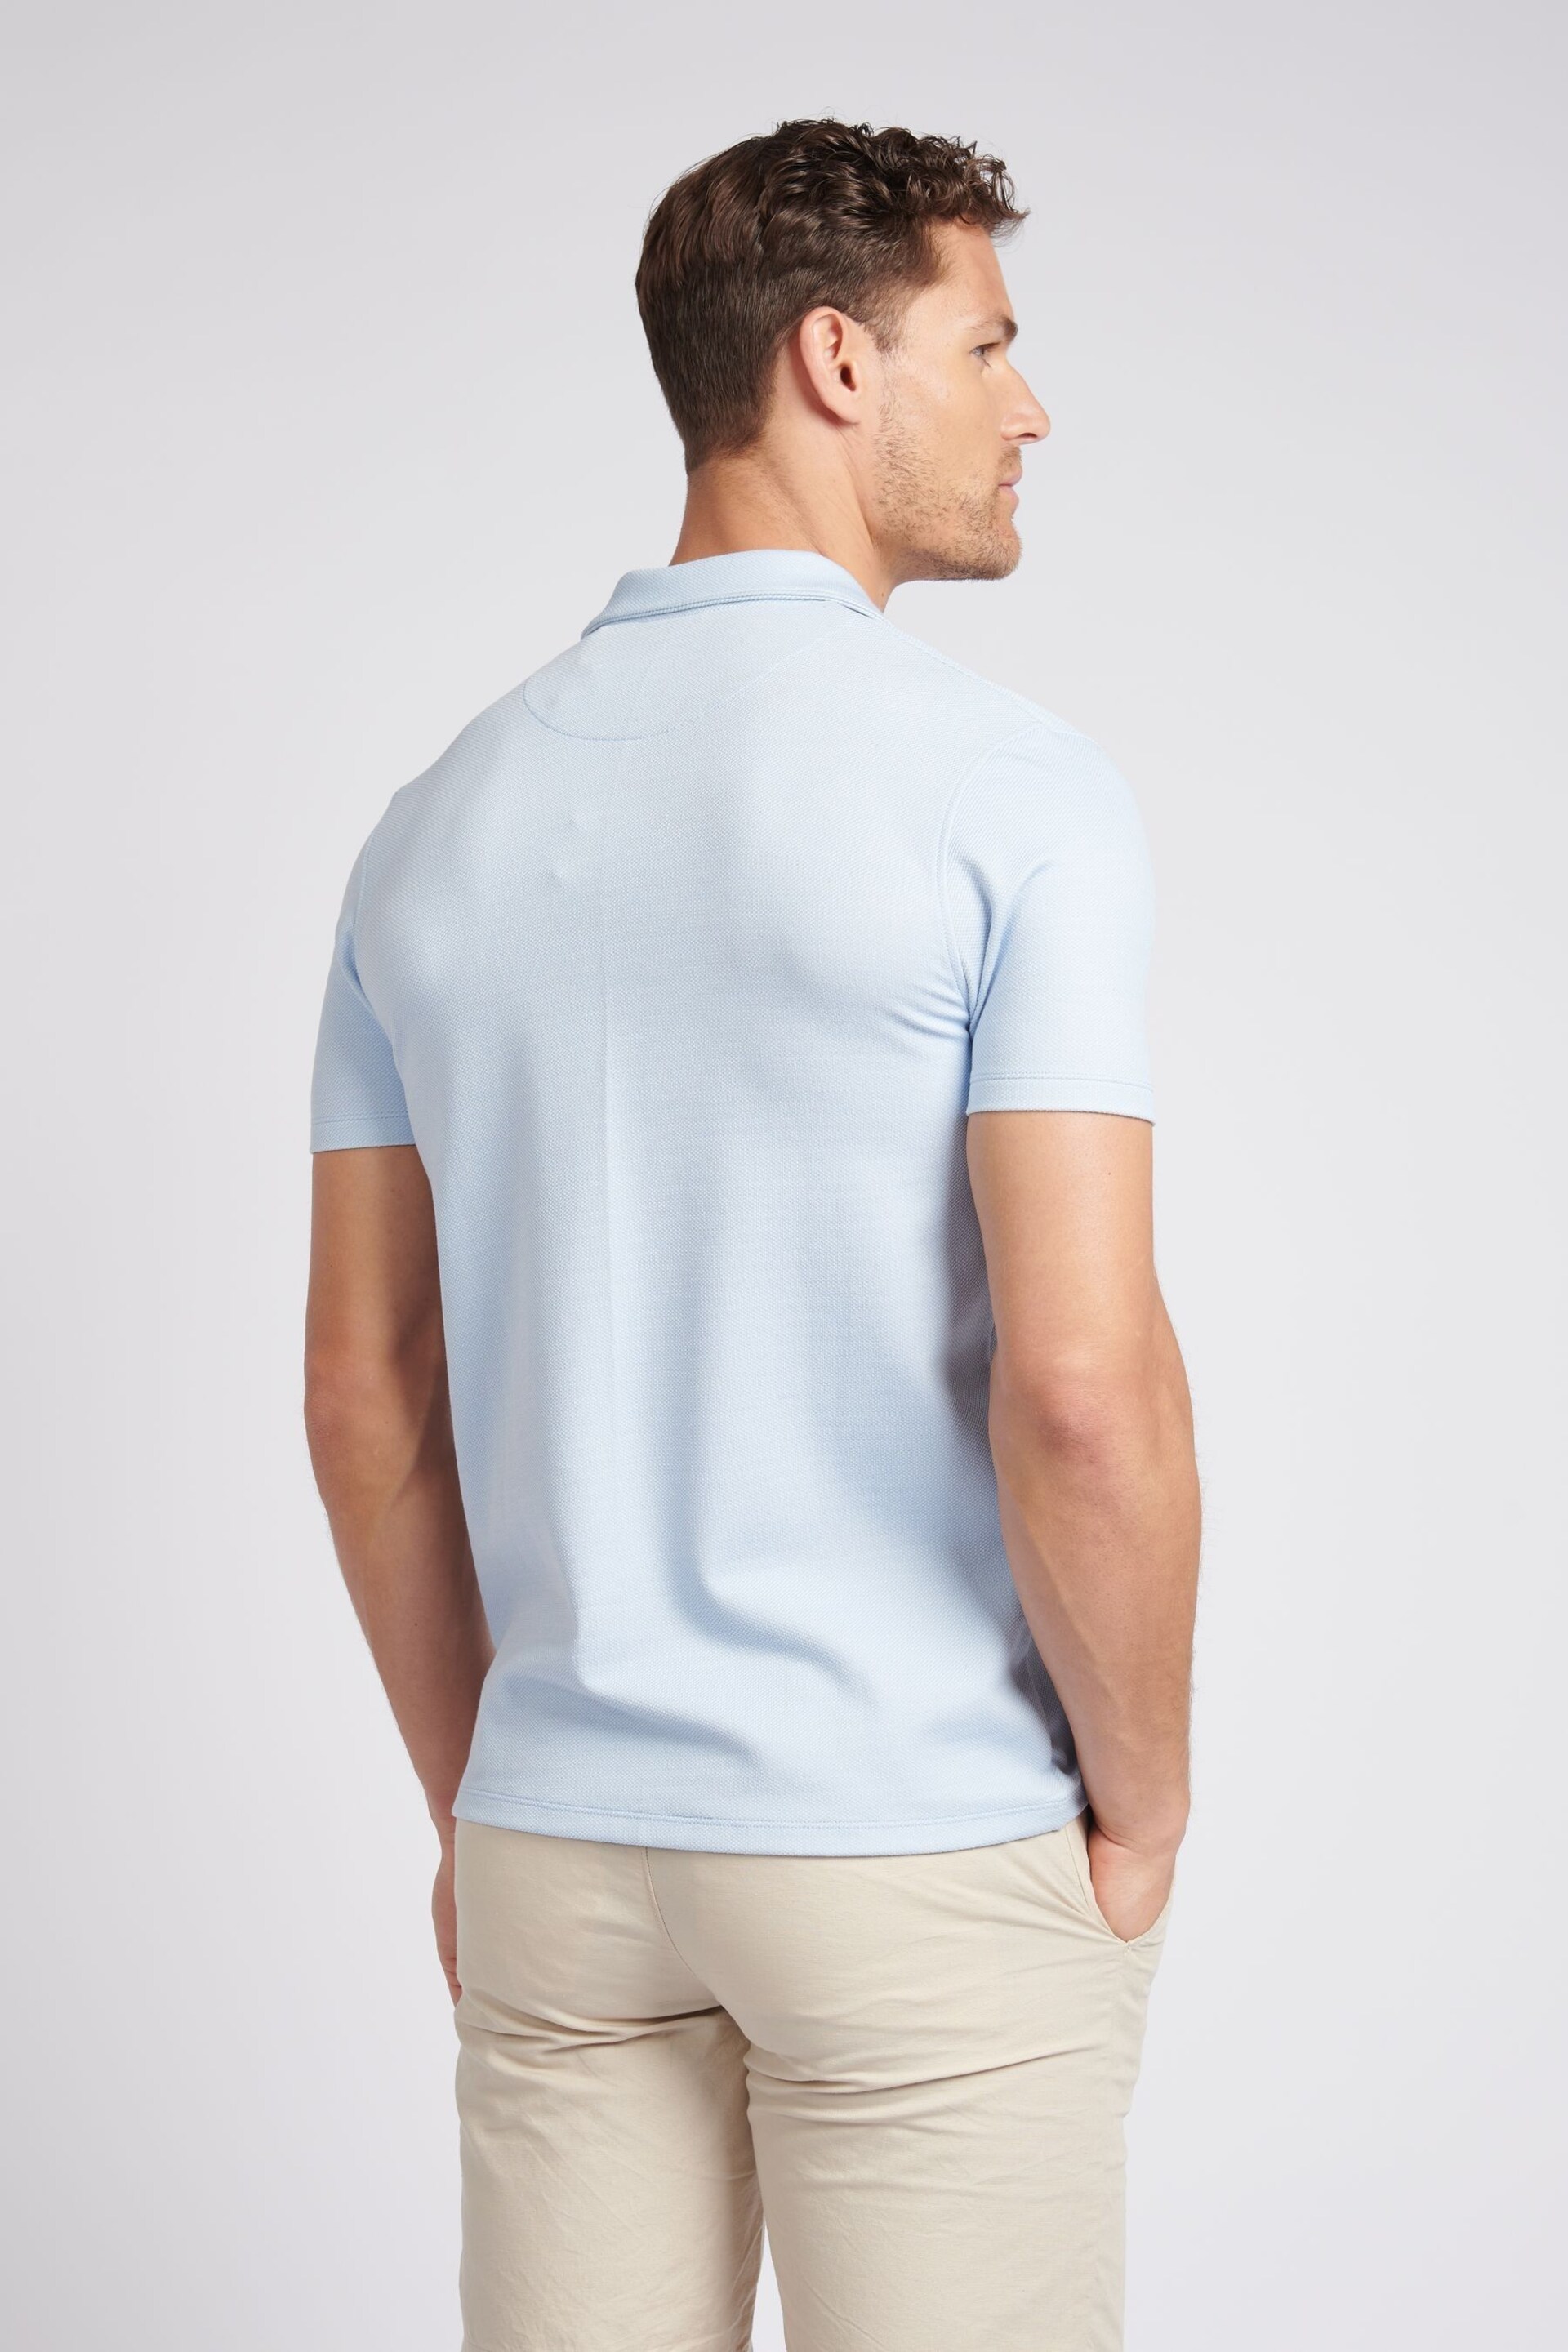 U.S. Polo Assn. Mens Regular Fit Blue Texture Short Sleeve Shirt - Image 4 of 7